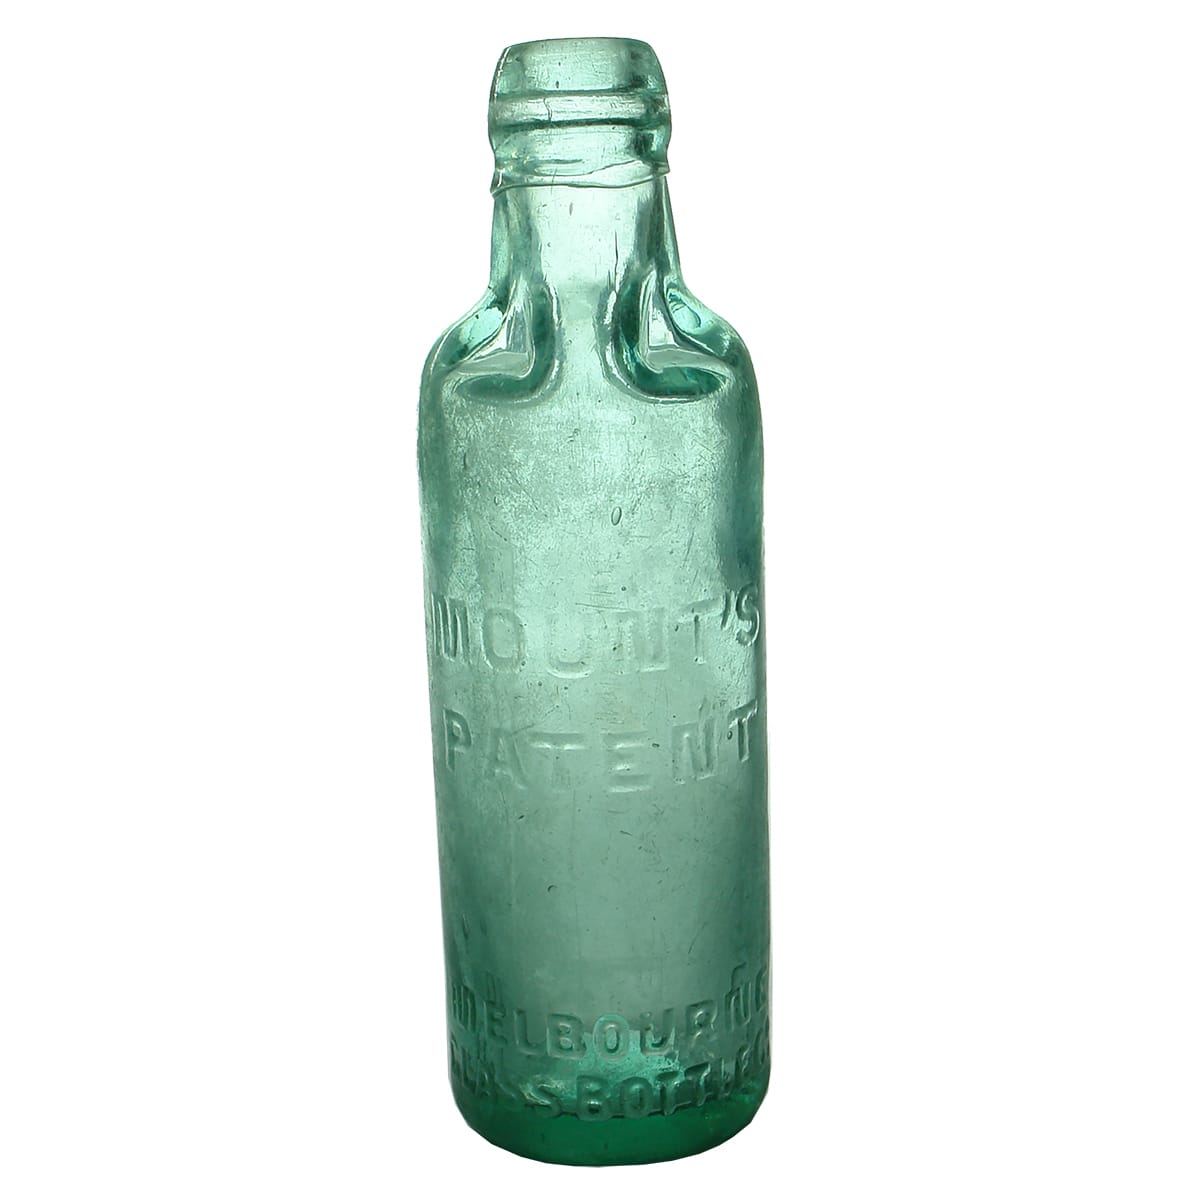 Patent. Mount's, Melbourne Glass Bottle Co. Aqua. 10 oz.